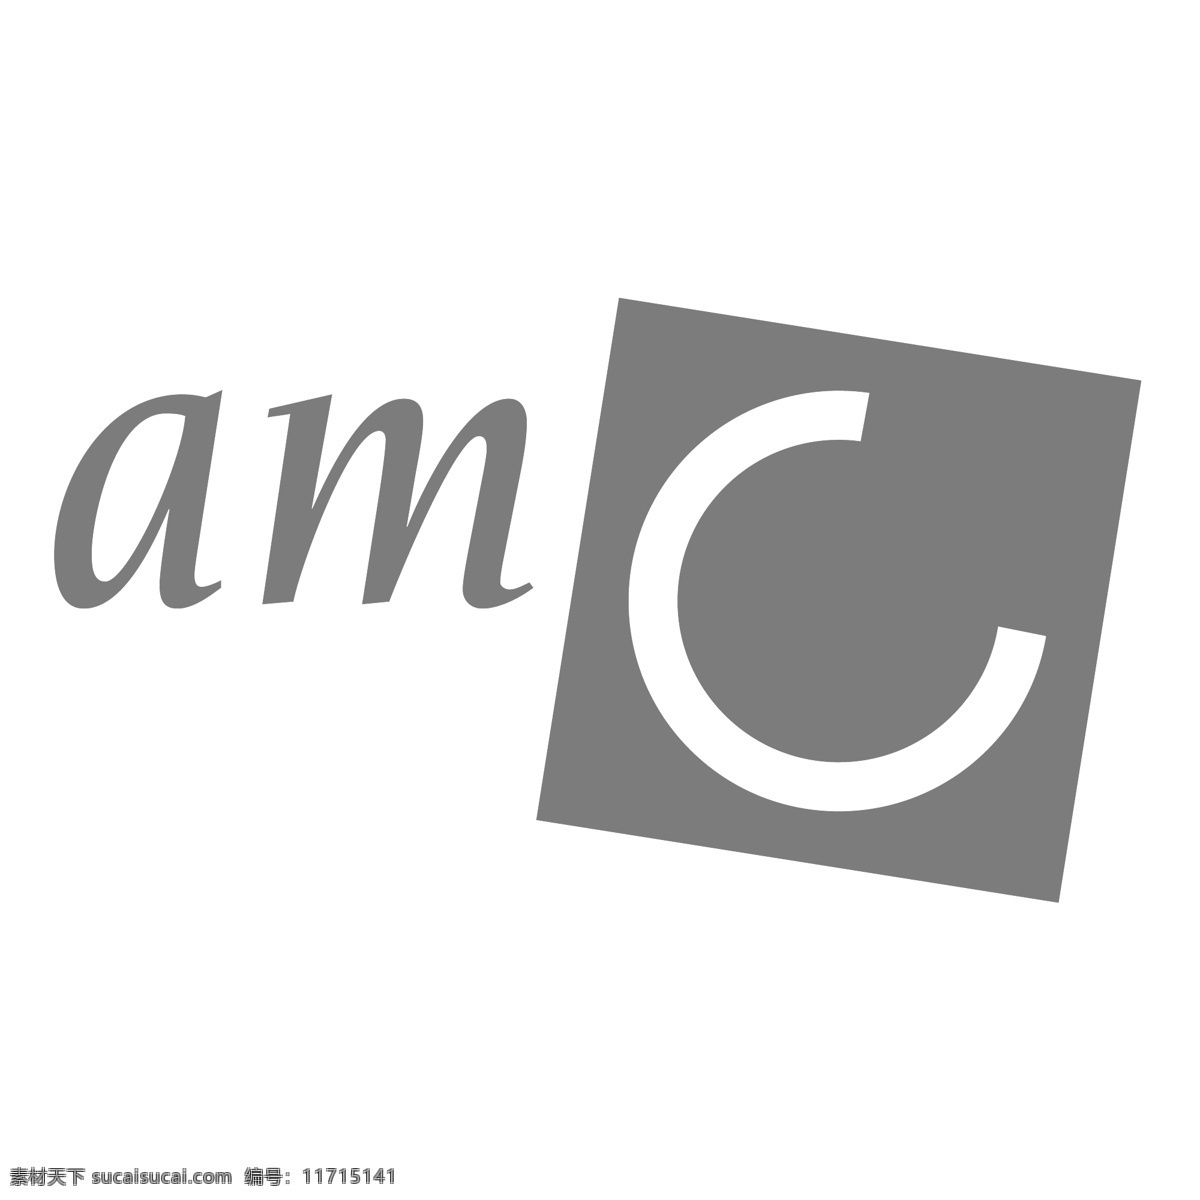 资产管理 公司 阿姆斯特丹 amc 标志 免费 psd源文件 logo设计